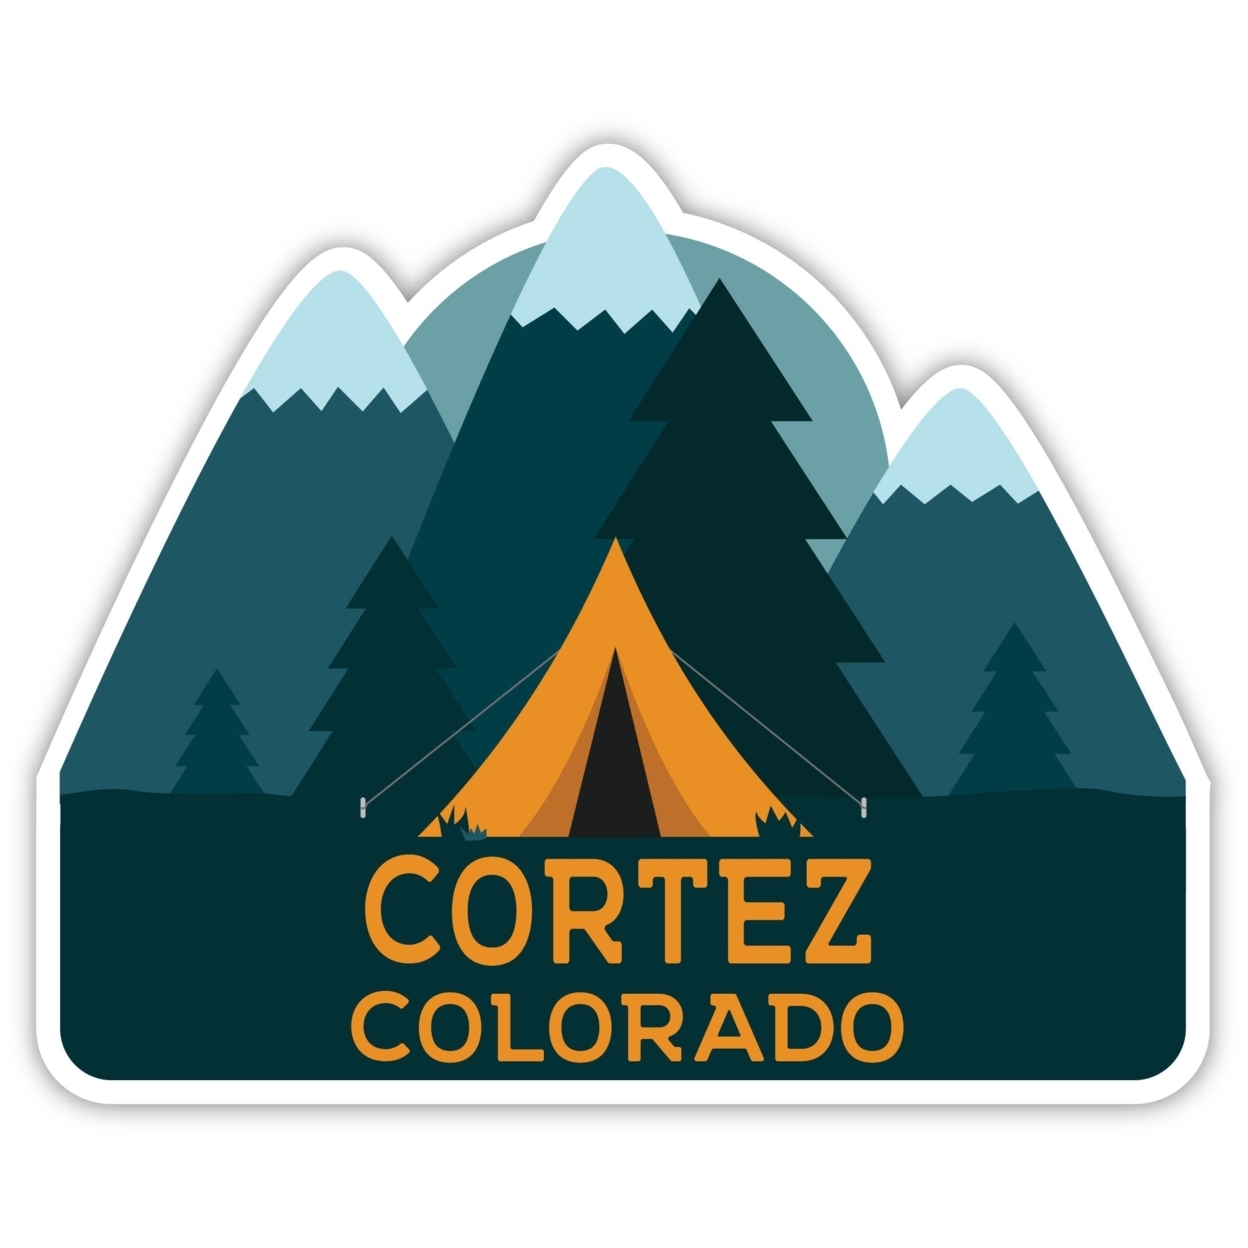 Cortez Colorado Souvenir Decorative Stickers (Choose Theme And Size) - Single Unit, 6-Inch, Tent